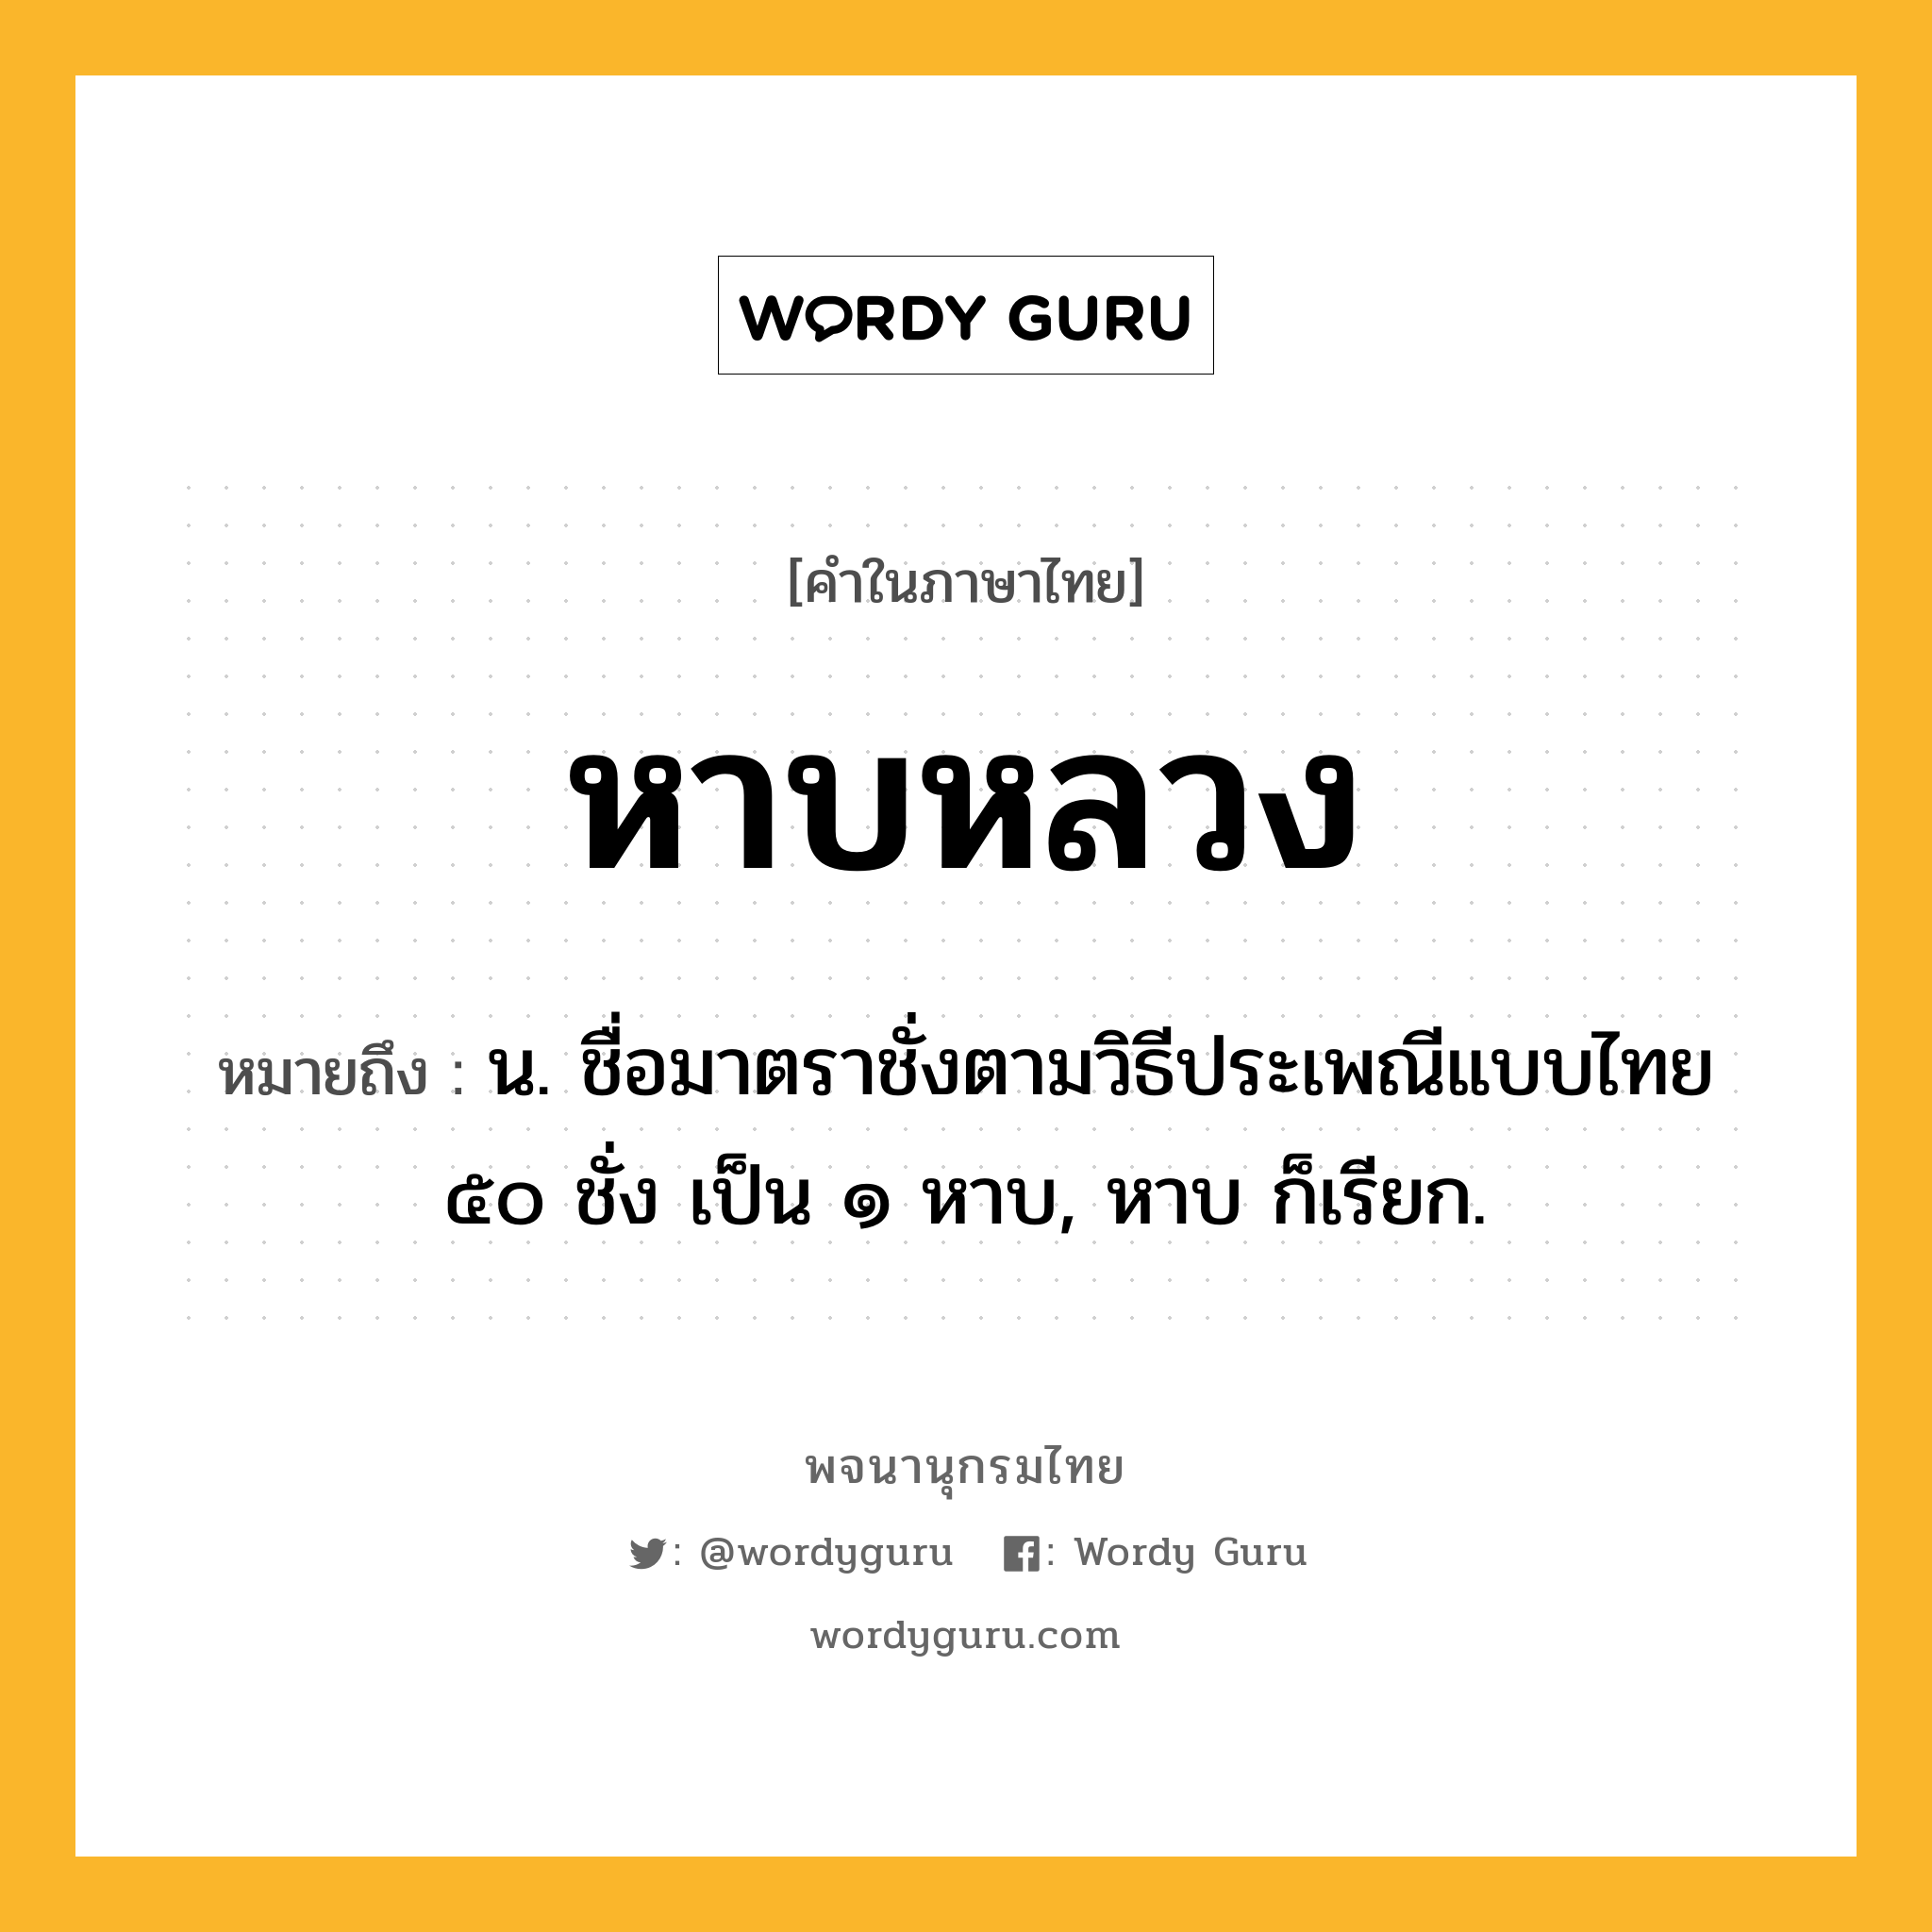 หาบหลวง หมายถึงอะไร?, คำในภาษาไทย หาบหลวง หมายถึง น. ชื่อมาตราชั่งตามวิธีประเพณีแบบไทย ๕๐ ชั่ง เป็น ๑ หาบ, หาบ ก็เรียก.